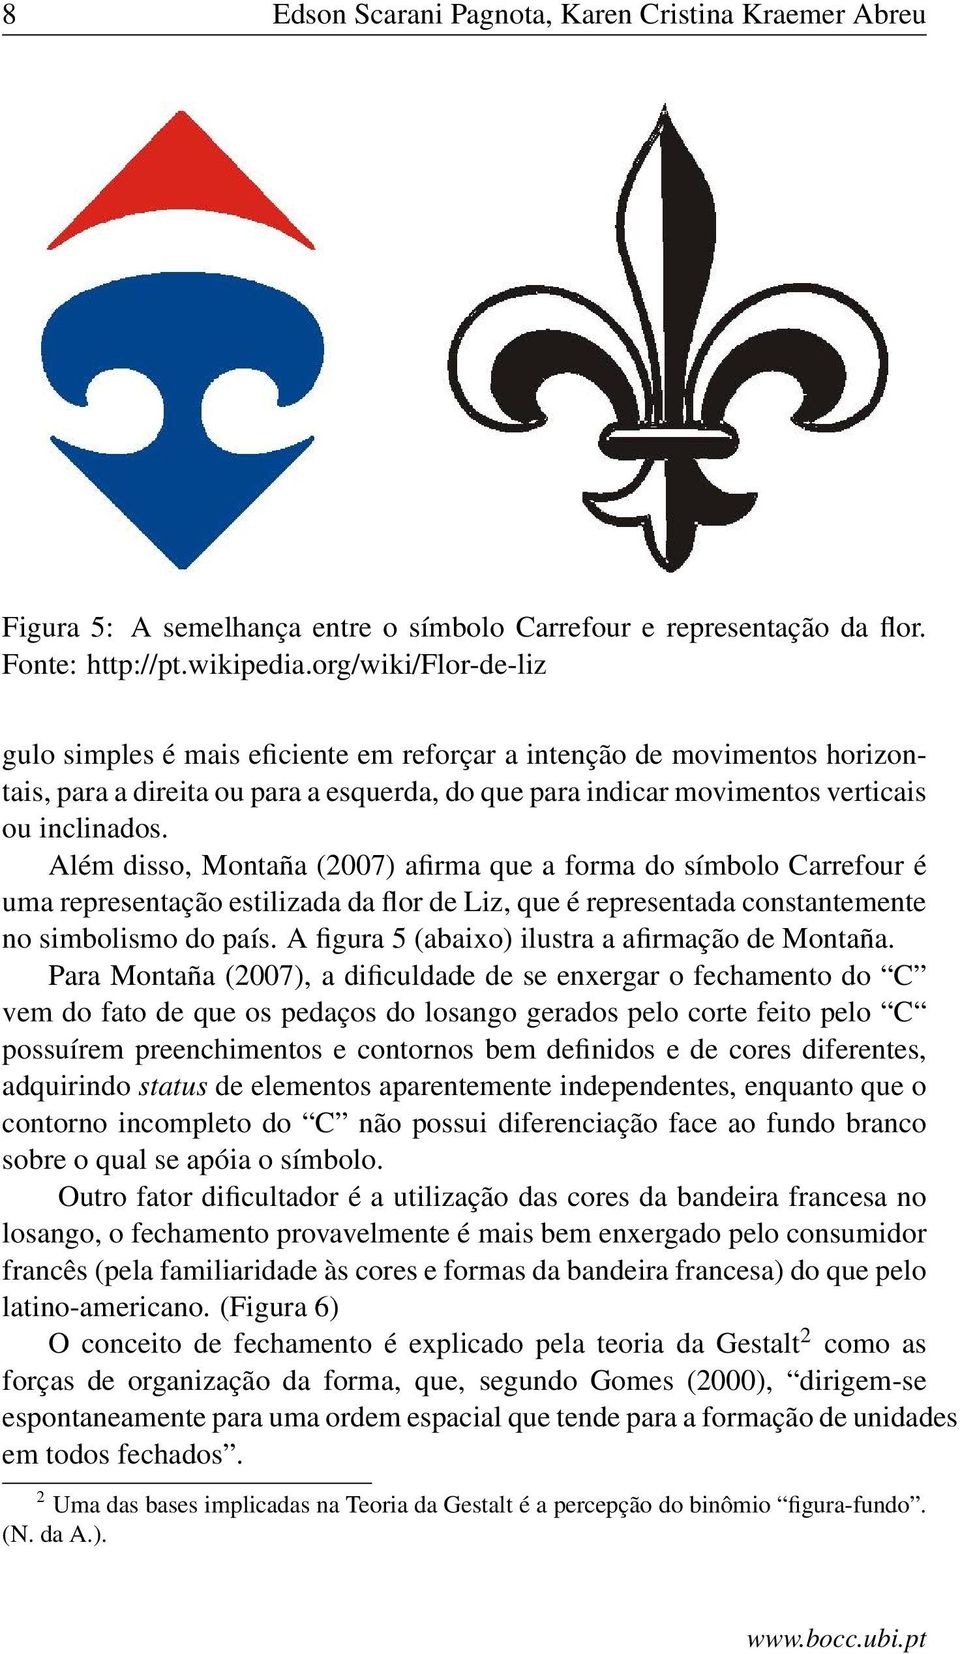 Além disso, Montaña (2007) afirma que a forma do símbolo Carrefour é uma representação estilizada da flor de Liz, que é representada constantemente no simbolismo do país.